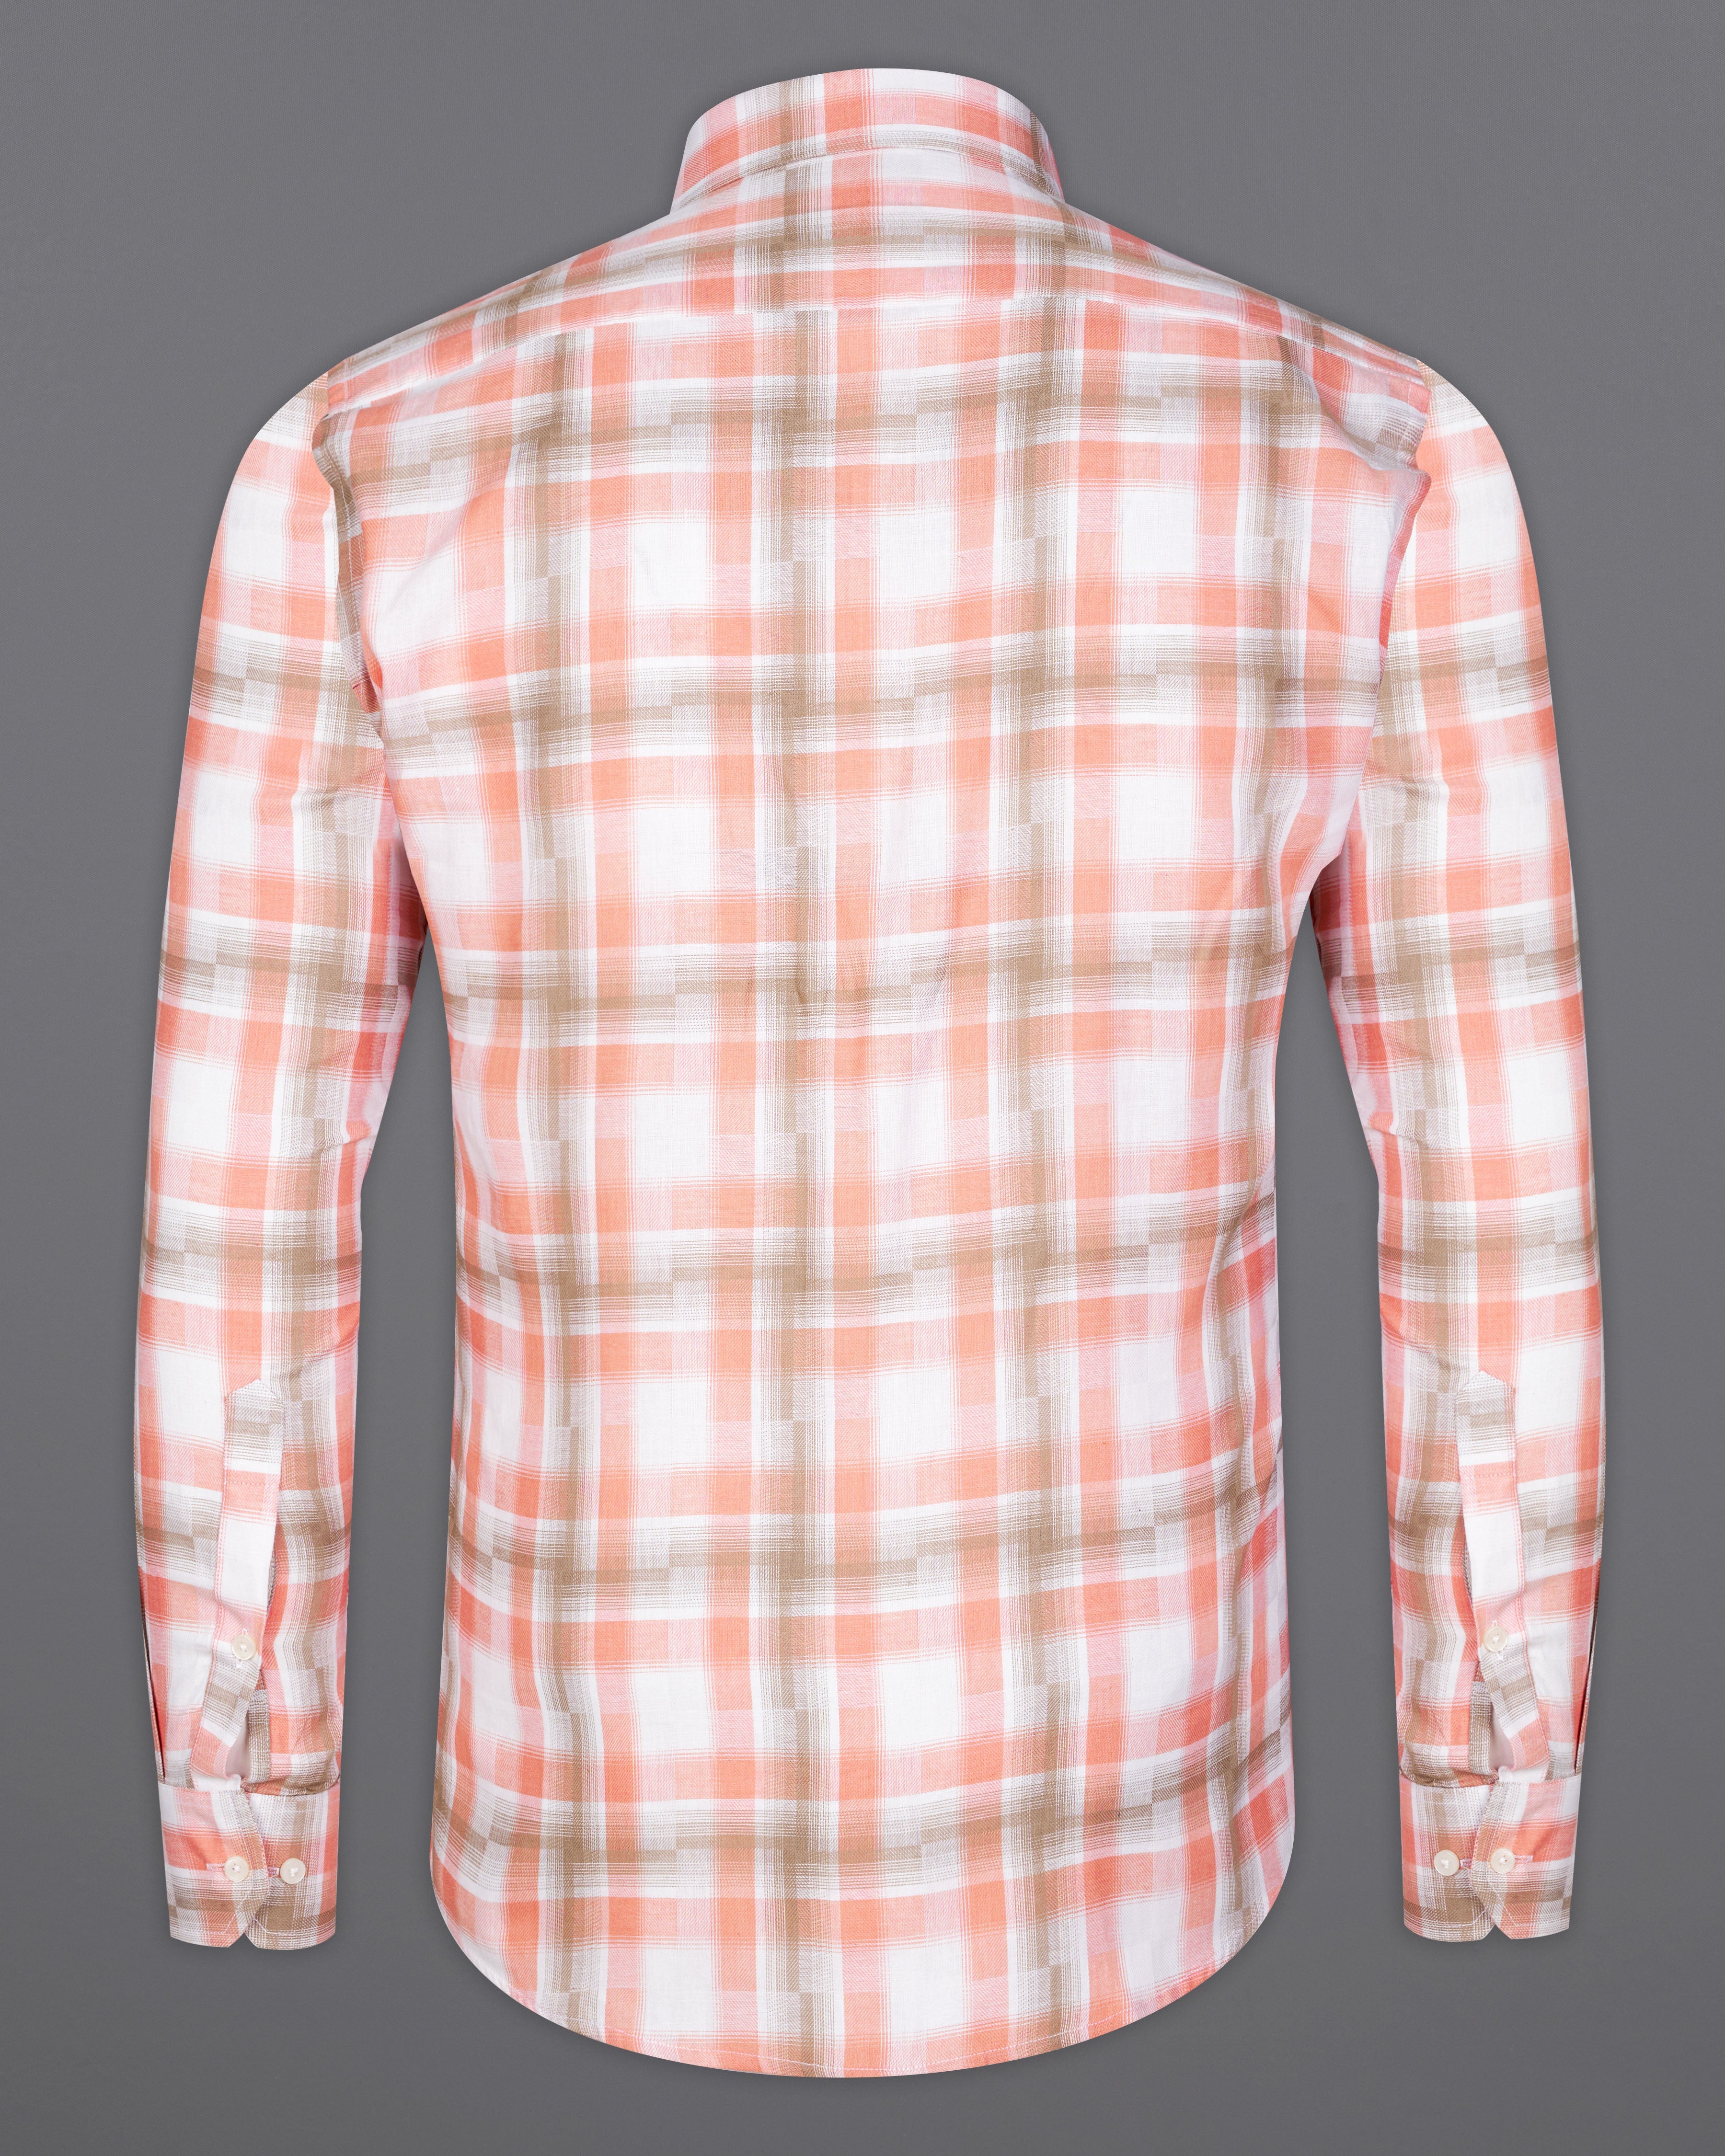 Tangerine Orange with Turkey Brown Checkered Hand Embroidered Work Twill Premium Cotton Designer  Shirt 6288-CP-E063-38, 6288-CP-E063-H-38, 6288-CP-E063-39, 6288-CP-E063-H-39, 6288-CP-E063-40, 6288-CP-E063-H-40, 6288-CP-E063-42, 6288-CP-E063-H-42, 6288-CP-E063-44, 6288-CP-E063-H-44, 6288-CP-E063-46, 6288-CP-E063-H-46, 6288-CP-E063-48, 6288-CP-E063-H-48, 6288-CP-E063-50, 6288-CP-E063-H-50, 6288-CP-E063-52, 6288-CP-E063-H-52